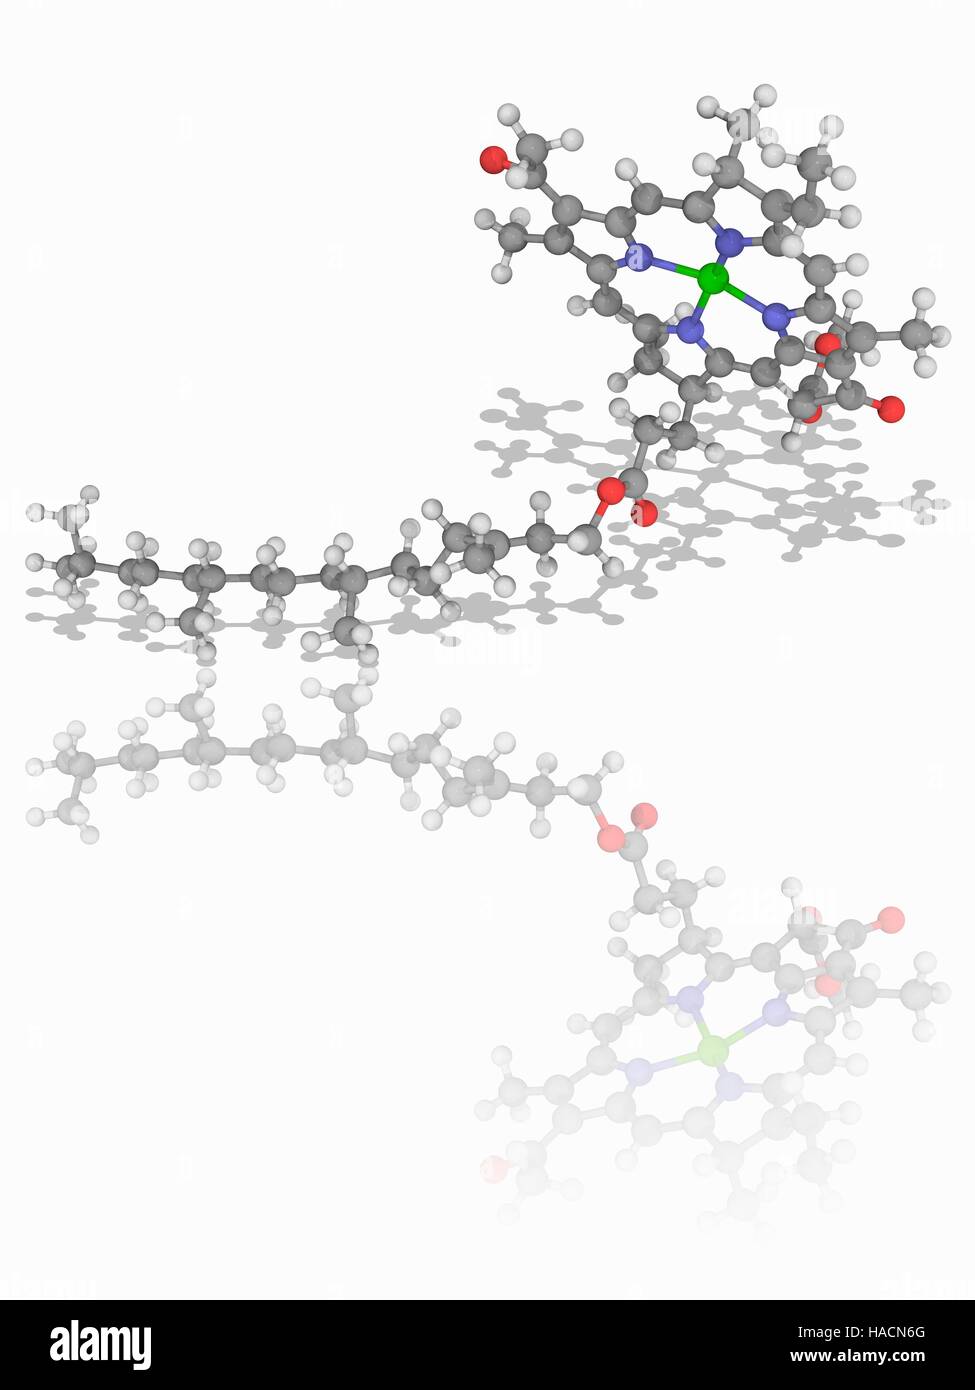 La clorofilla B. modello molecolare della pianta pigmento clorofilla B (C55.H70.Mg.N4.O6). Questa molecola ha un ione magnesio al centro di un anello di clorina. Essa svolge un ruolo essenziale nella fotosintesi nelle piante. Gli atomi sono rappresentati da sfere e sono codificati a colori: carbonio (grigio), Idrogeno (bianco), Azoto (blu), Ossigeno (rosso) e di magnesio (verde). Illustrazione. Foto Stock